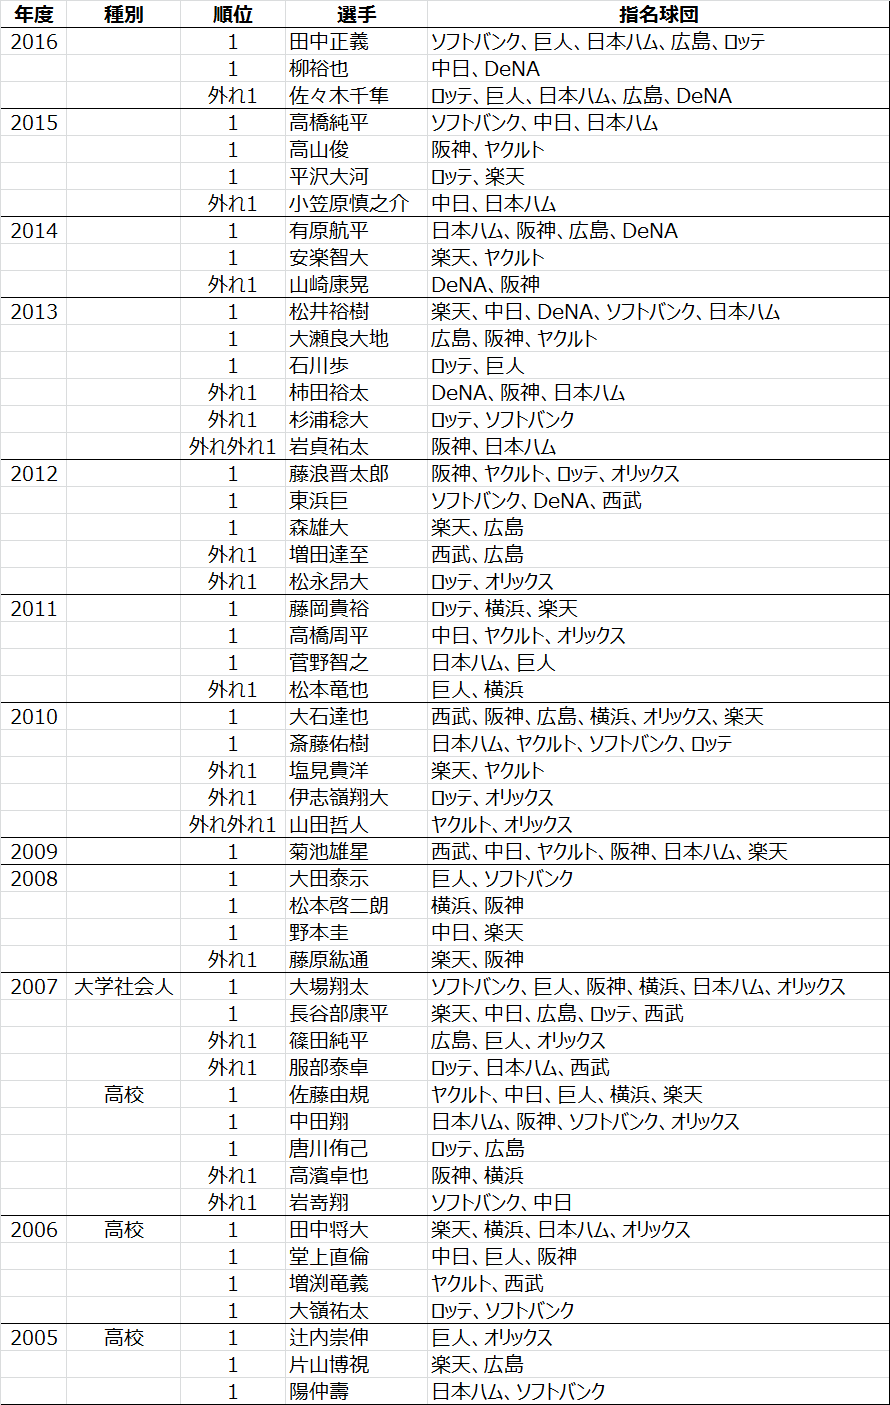 日本プロ野球ドラフト会議2005年から2016年までのくじ引きデータ